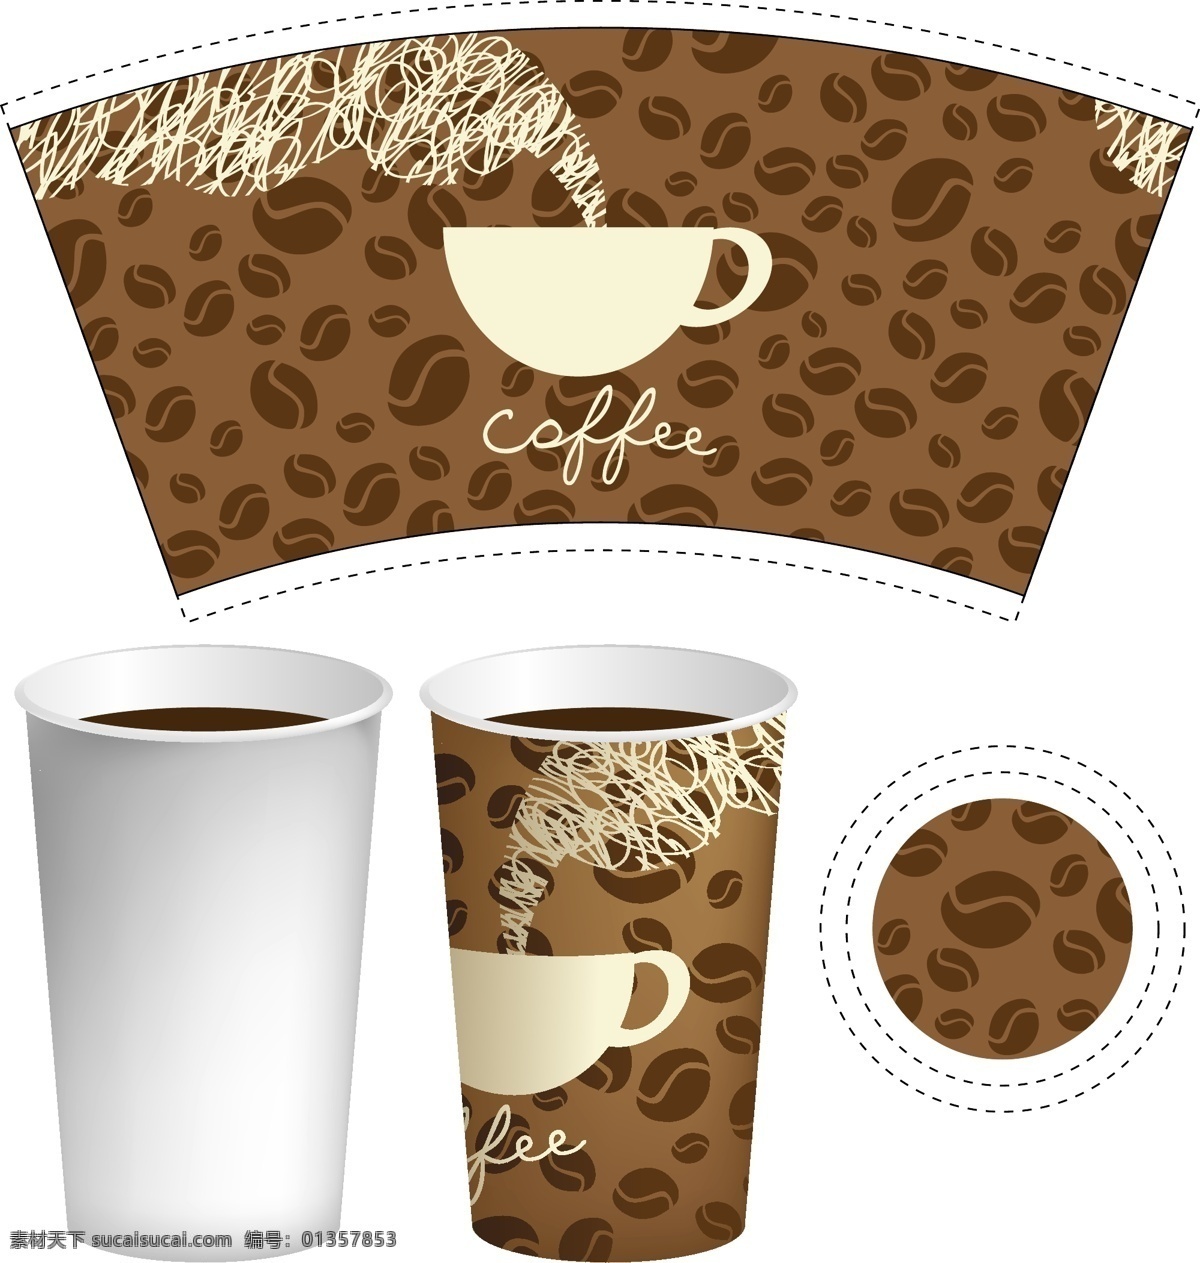 咖啡 杯子 包装 矢量素材 矢量图 设计素材 创意设计 包装设计 咖啡杯 矢量 高清图片